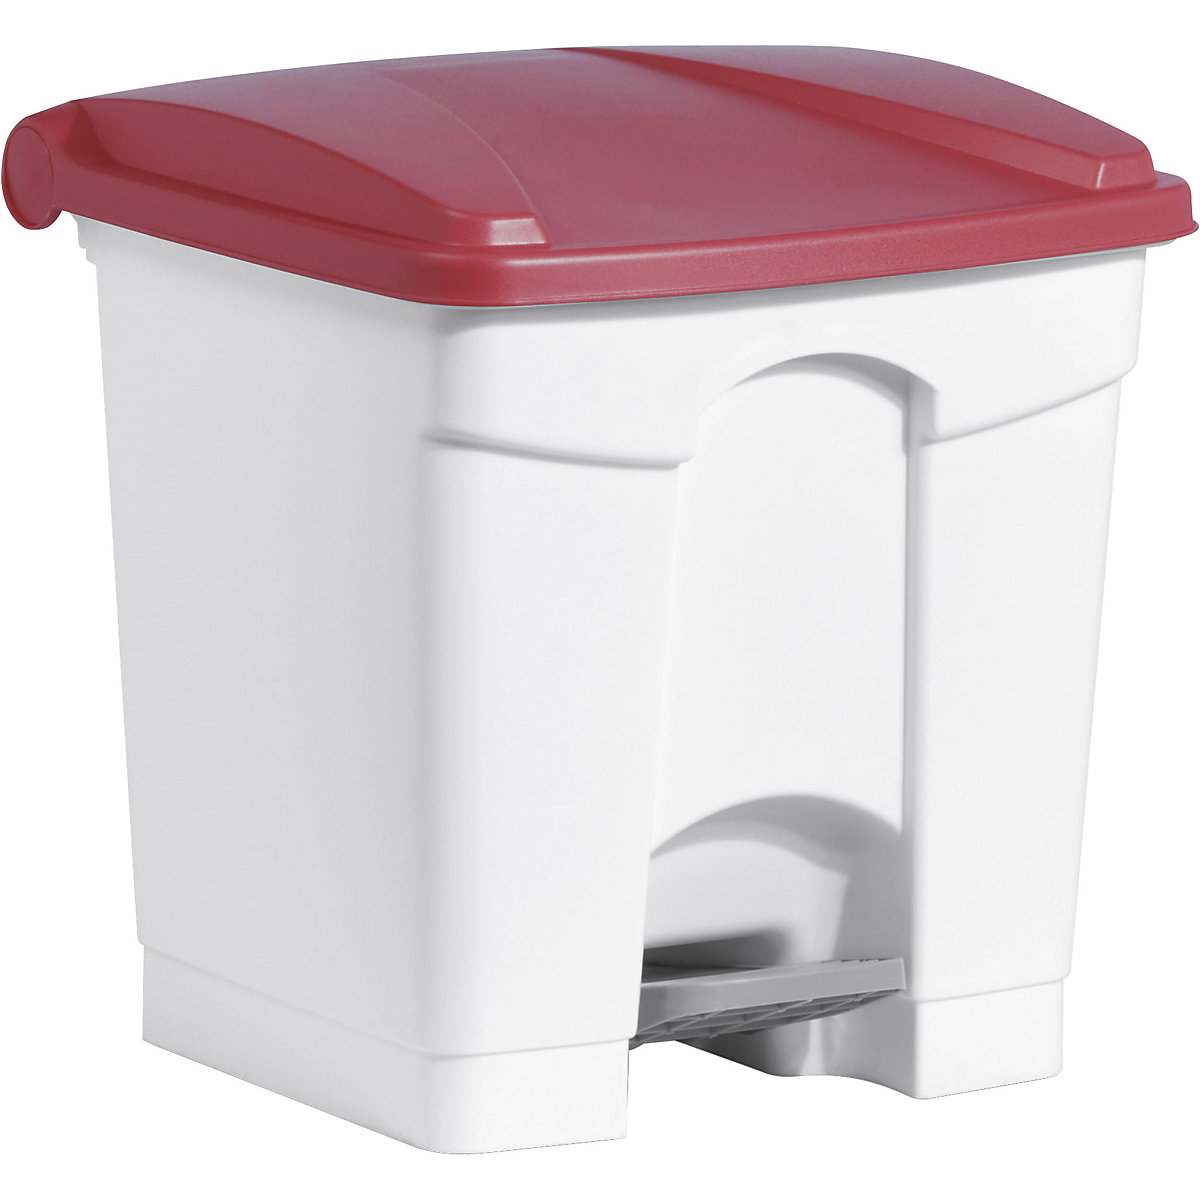 Tretabfallbehälter helit, Volumen 30 l, BxHxT 410 x 440 x 400 mm, weiß, Deckel rot-5